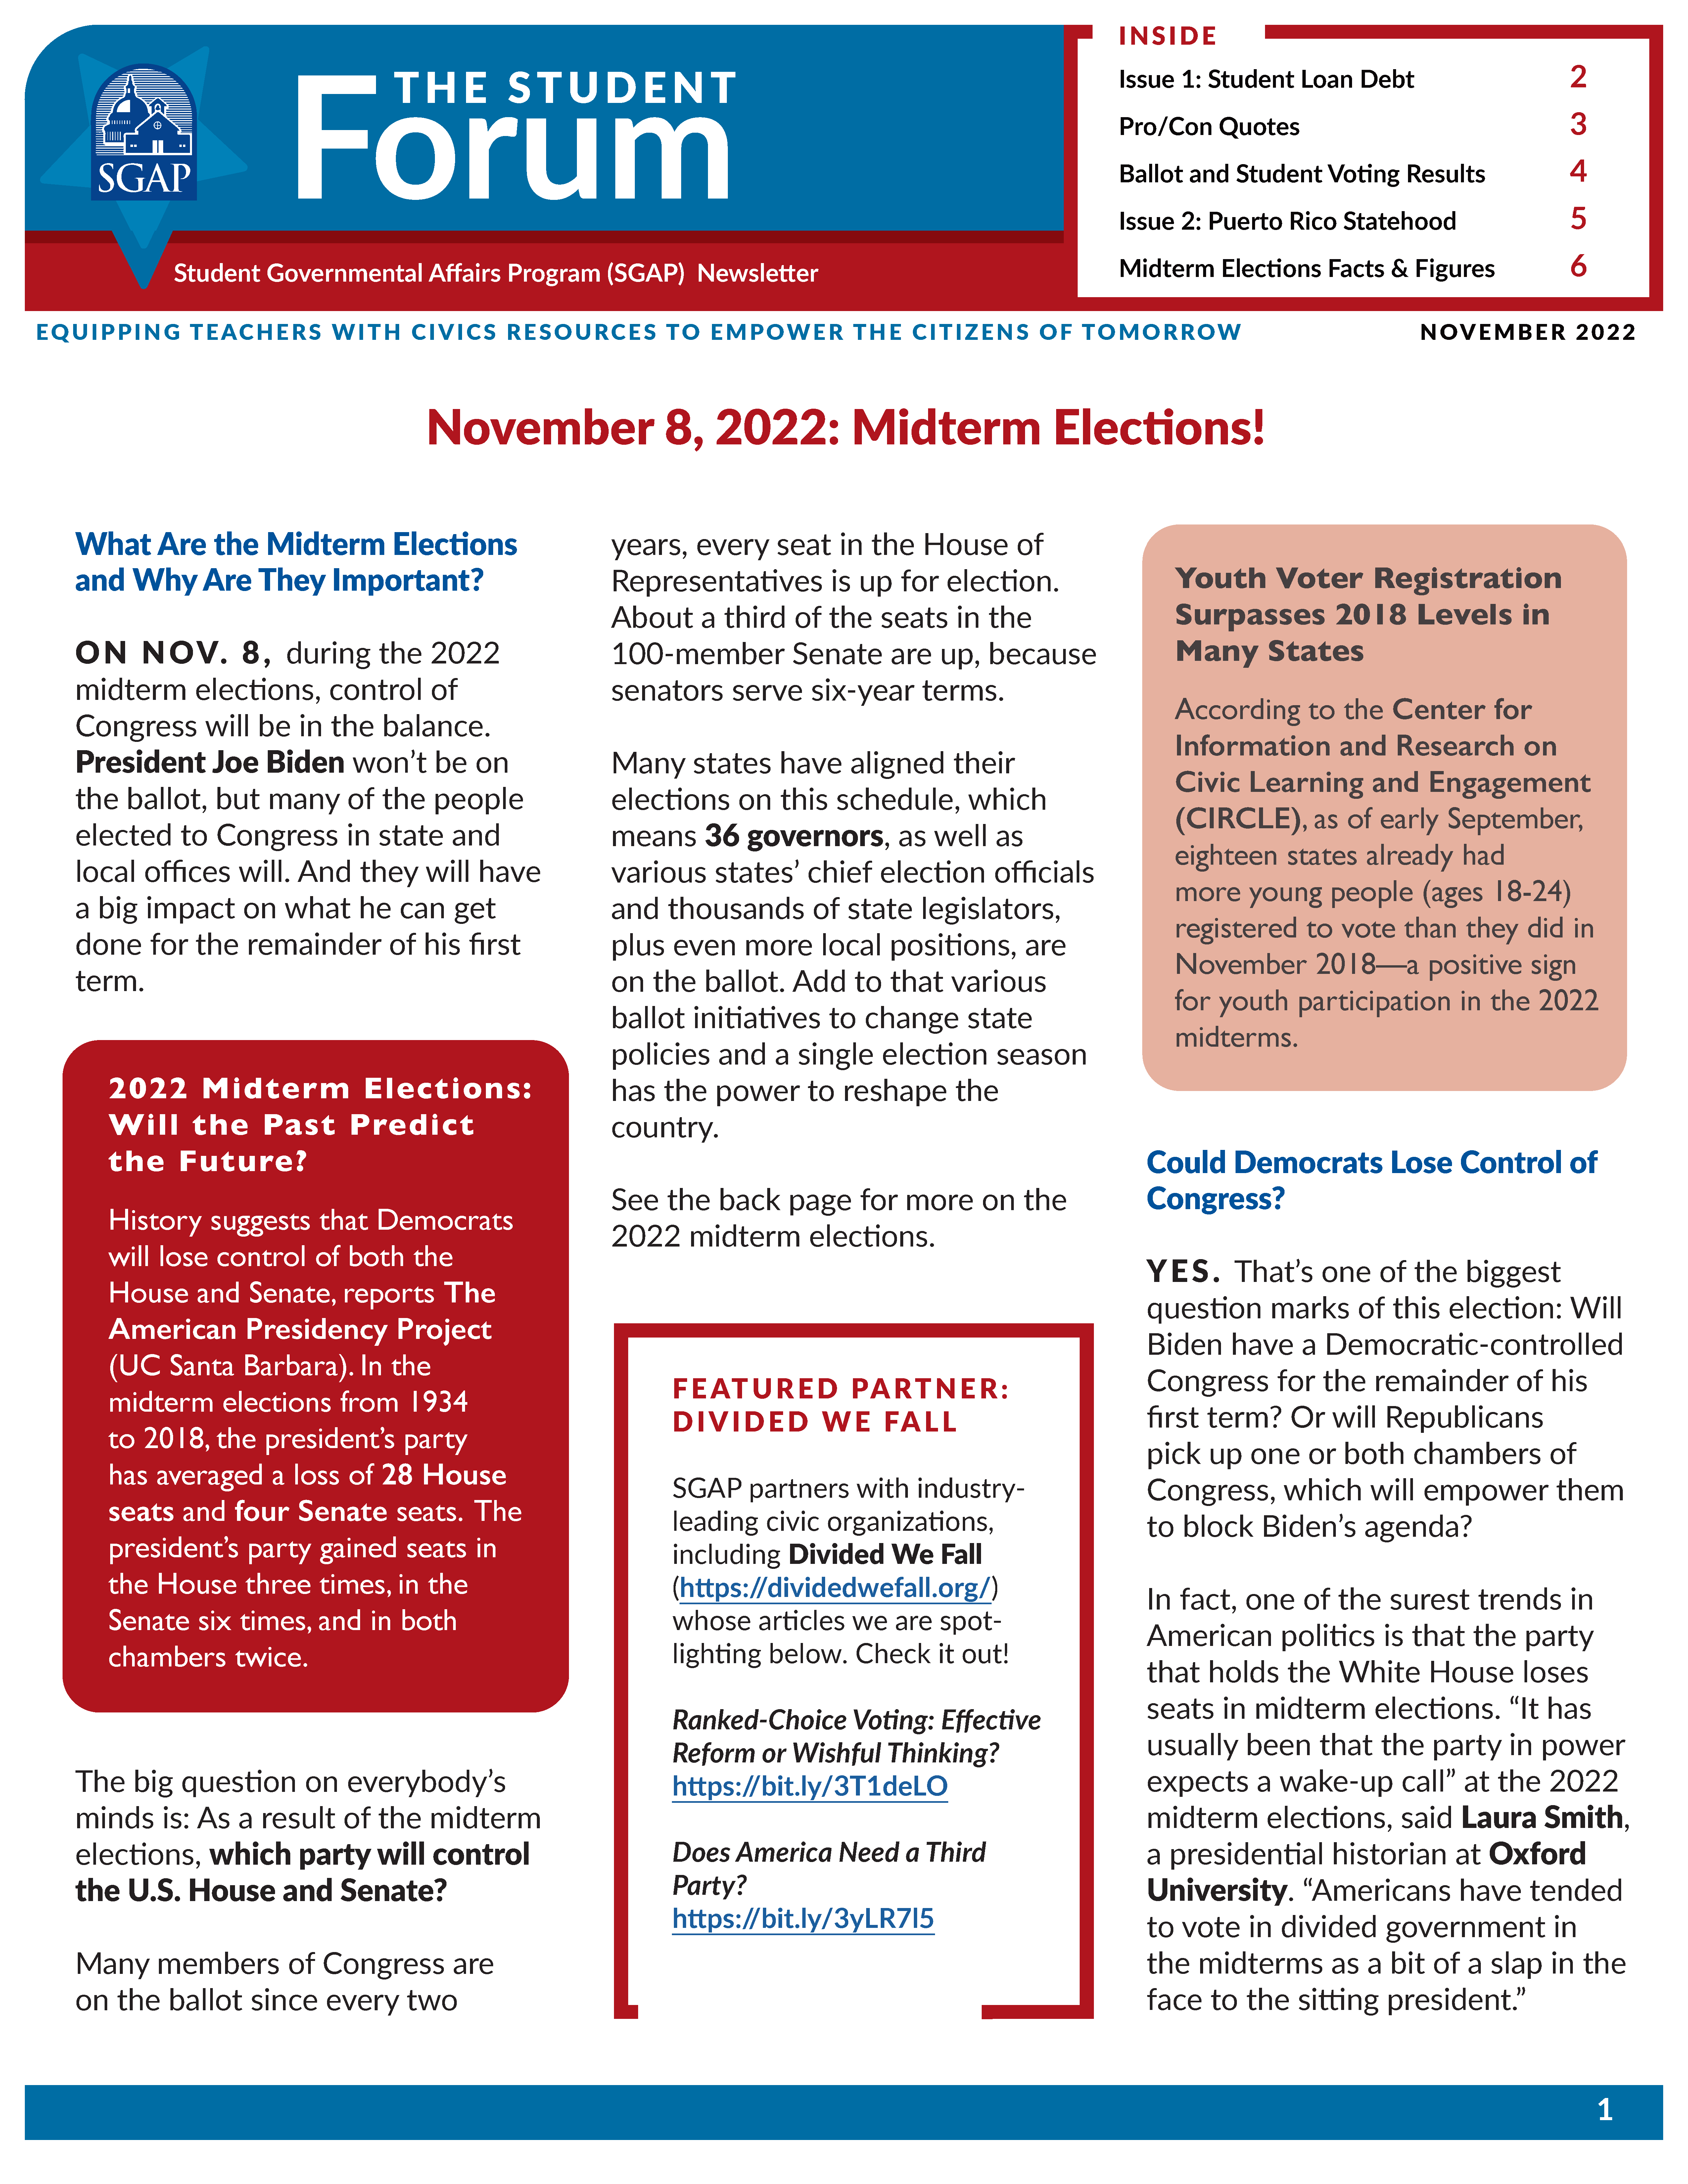 SGAP Newsletter for November 2022 (Student Loan Debt + Puerto Rico Statehood)